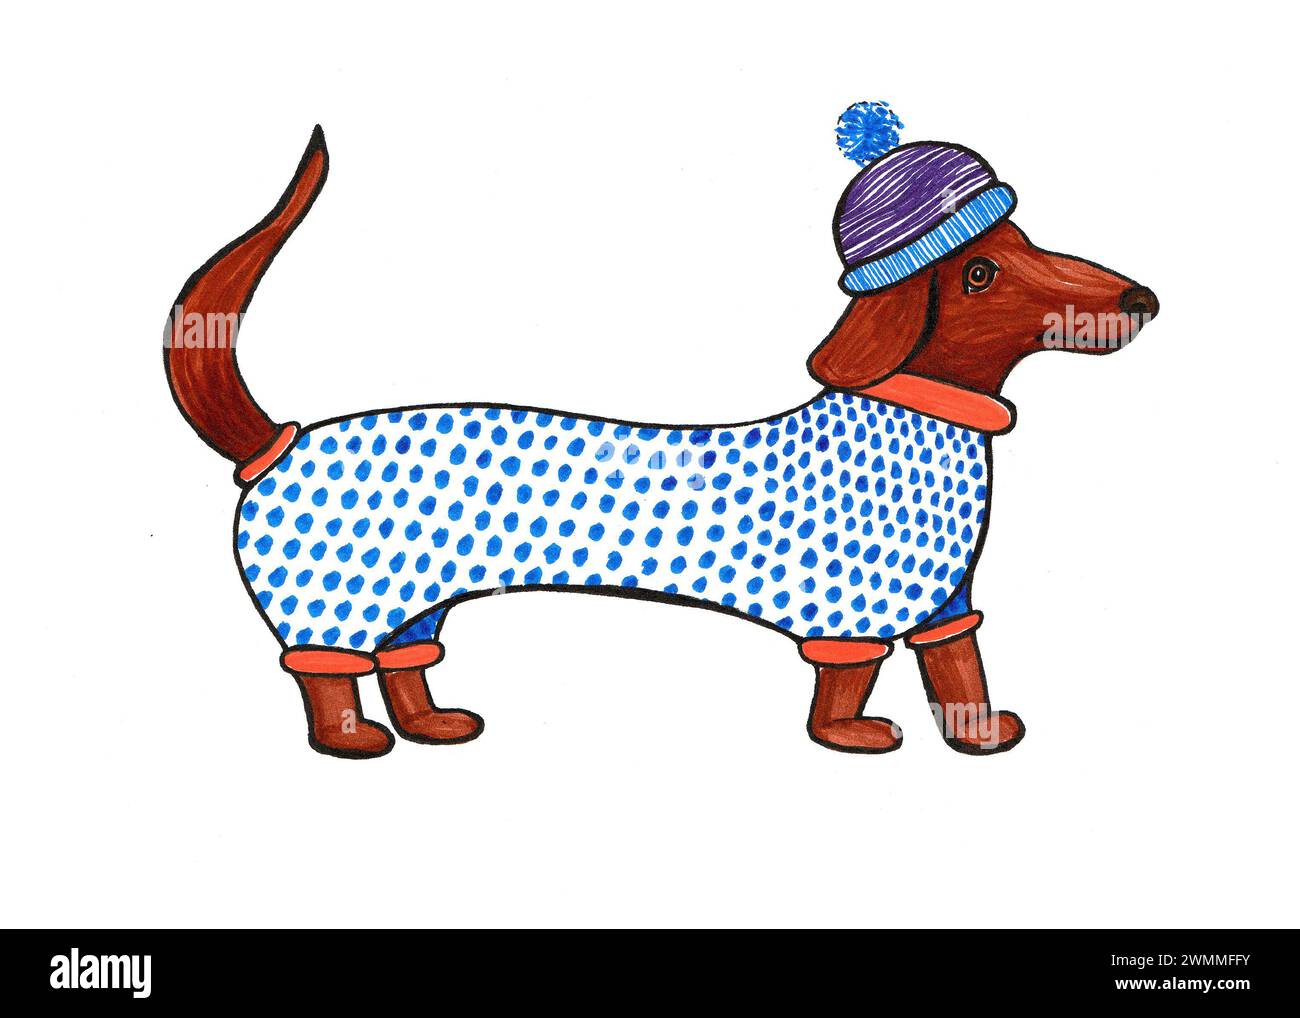 Illustrazione di un cane da dachshund con un vestito e un cappello. Isolato su sfondo bianco. Disegno con marcatori colorati e contorno nero. Cane stilizzato in profi Foto Stock